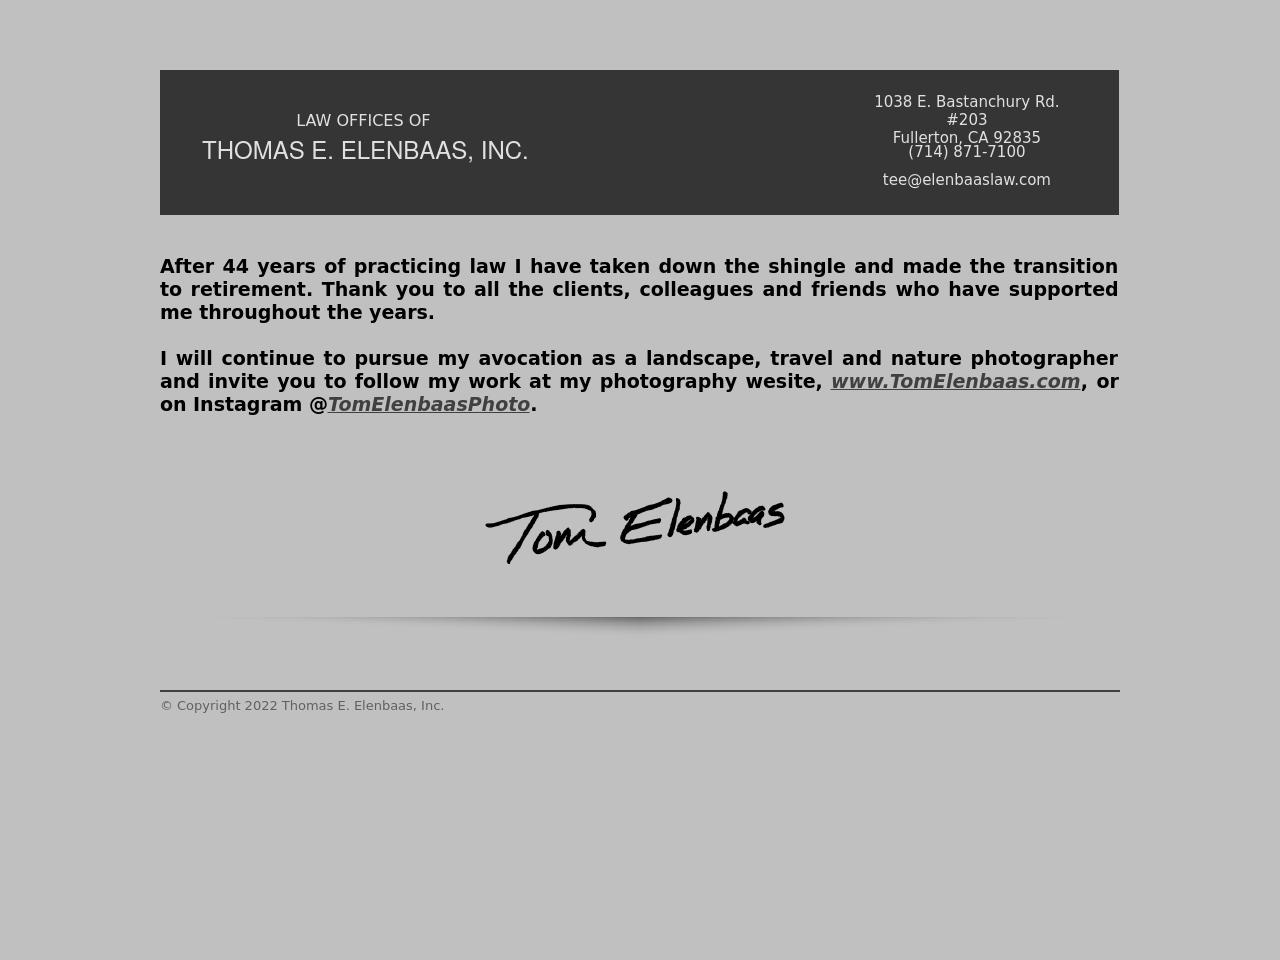 Elenbaas, Thomas E - Fullerton CA Lawyers